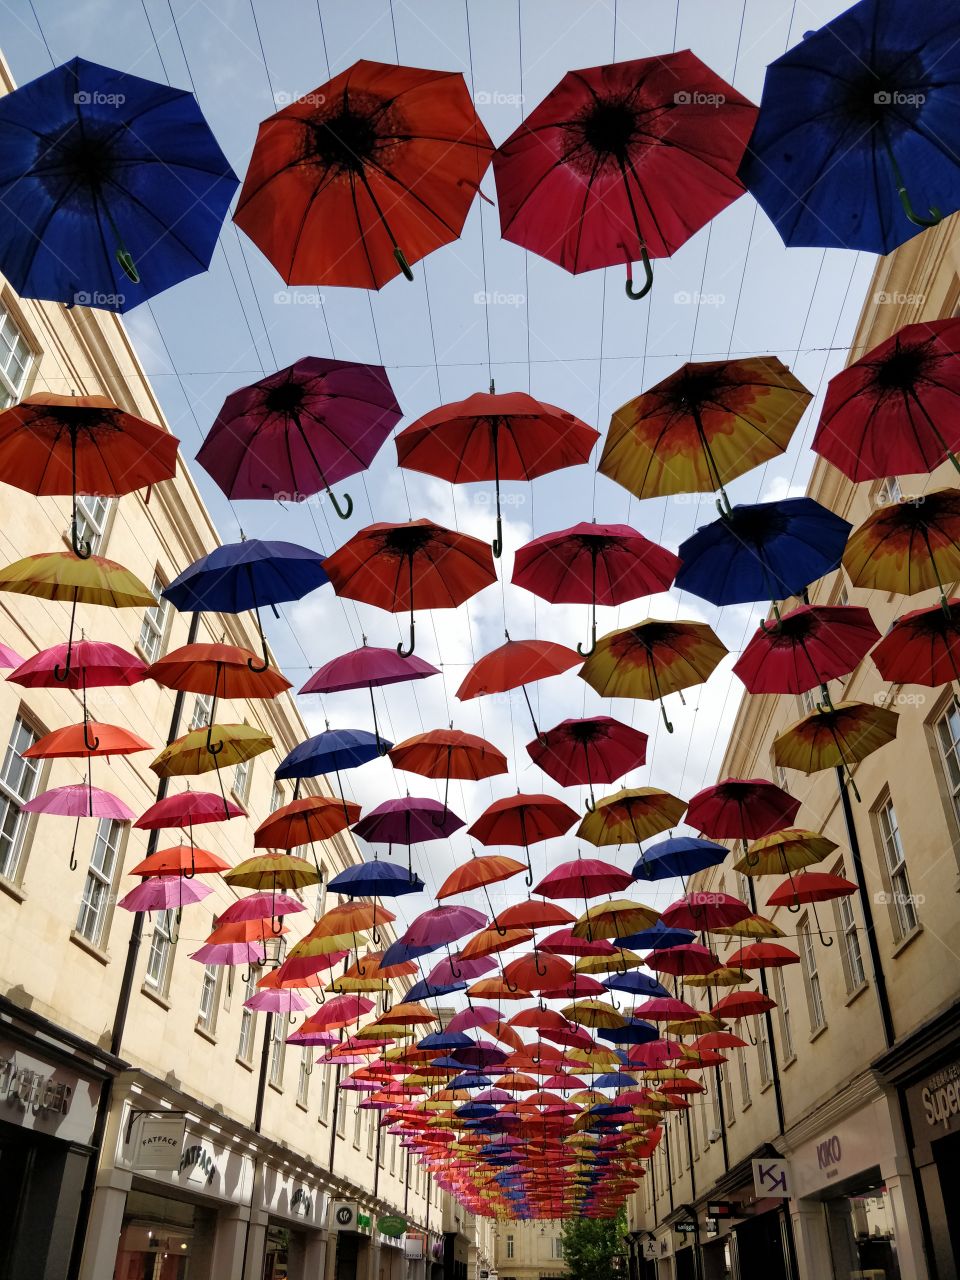 Umbrella street art in Bath, UK